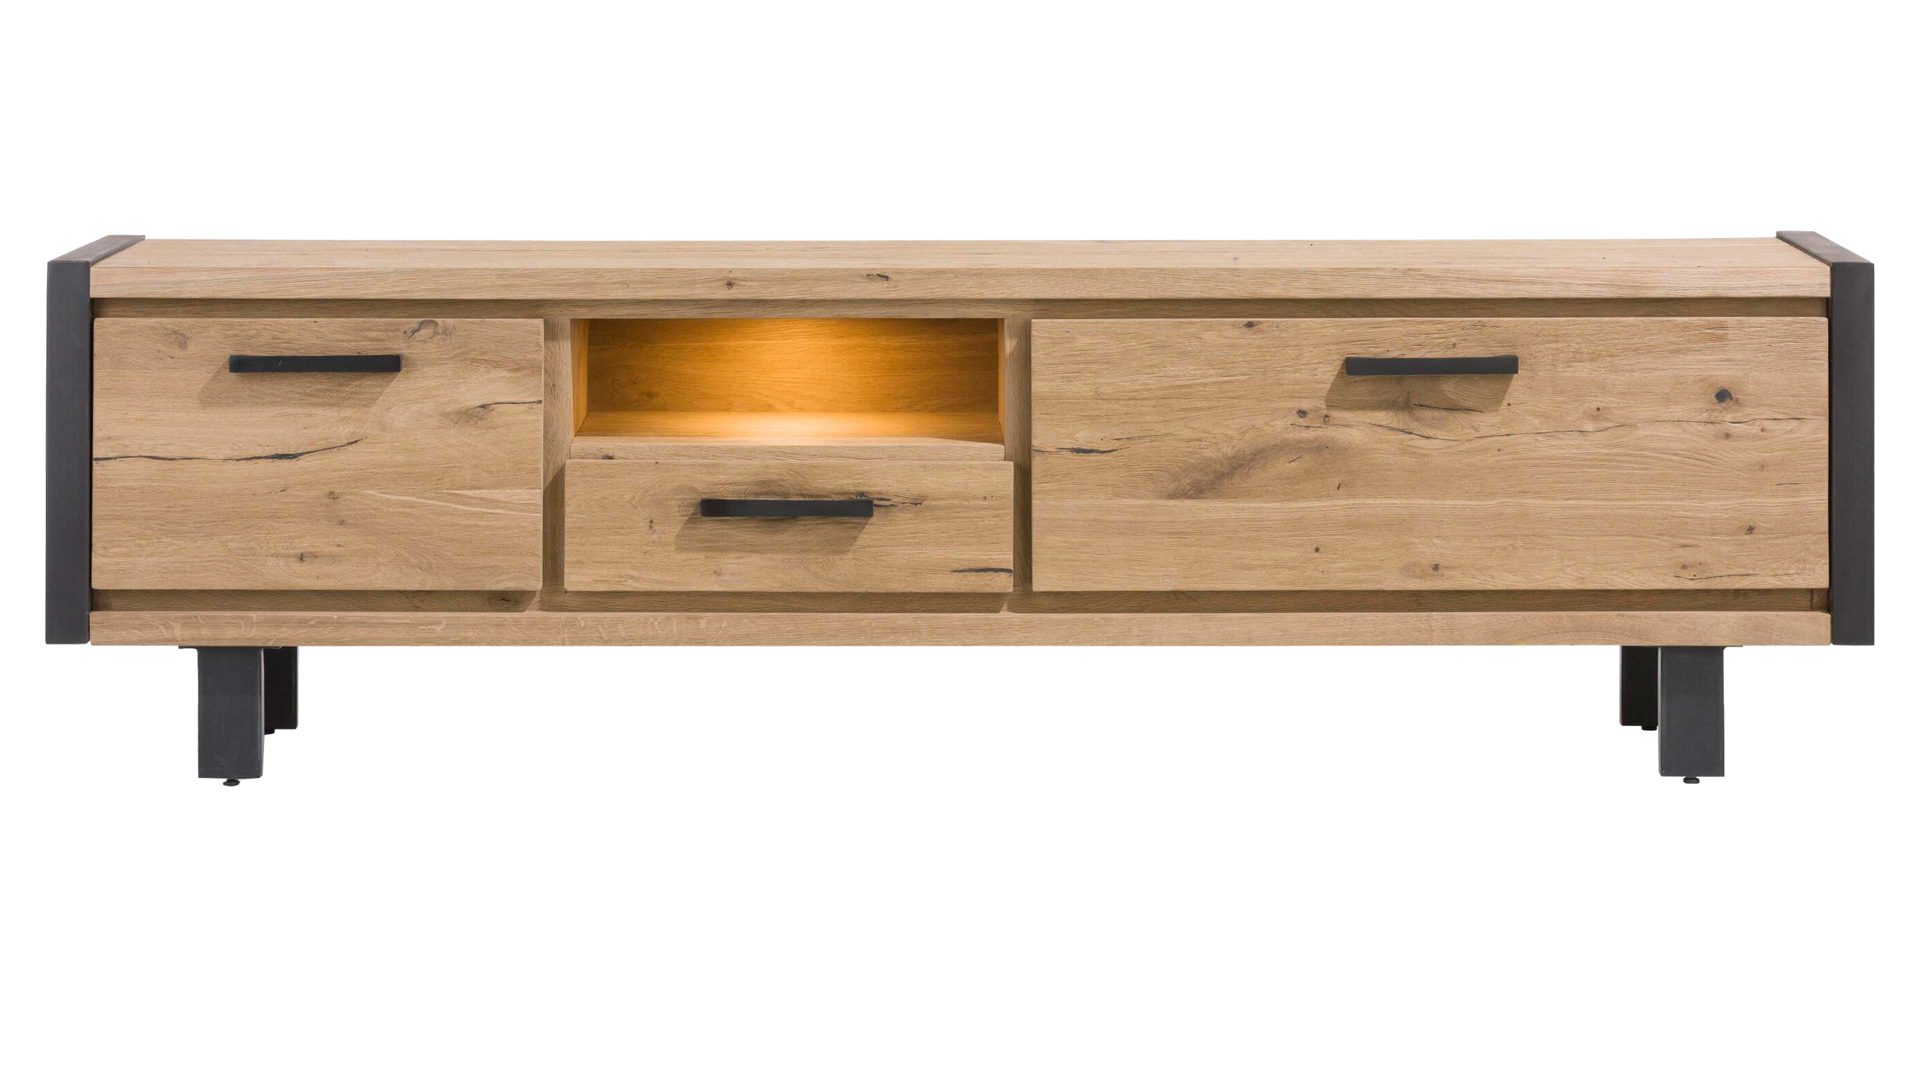 Lowboard Habufa aus Holz in Holzfarben HABUFA Medienmöbel bzw. Lowboard Brooklyn Railway braunes Eichefurnier – zwei Türen, eine Schublade